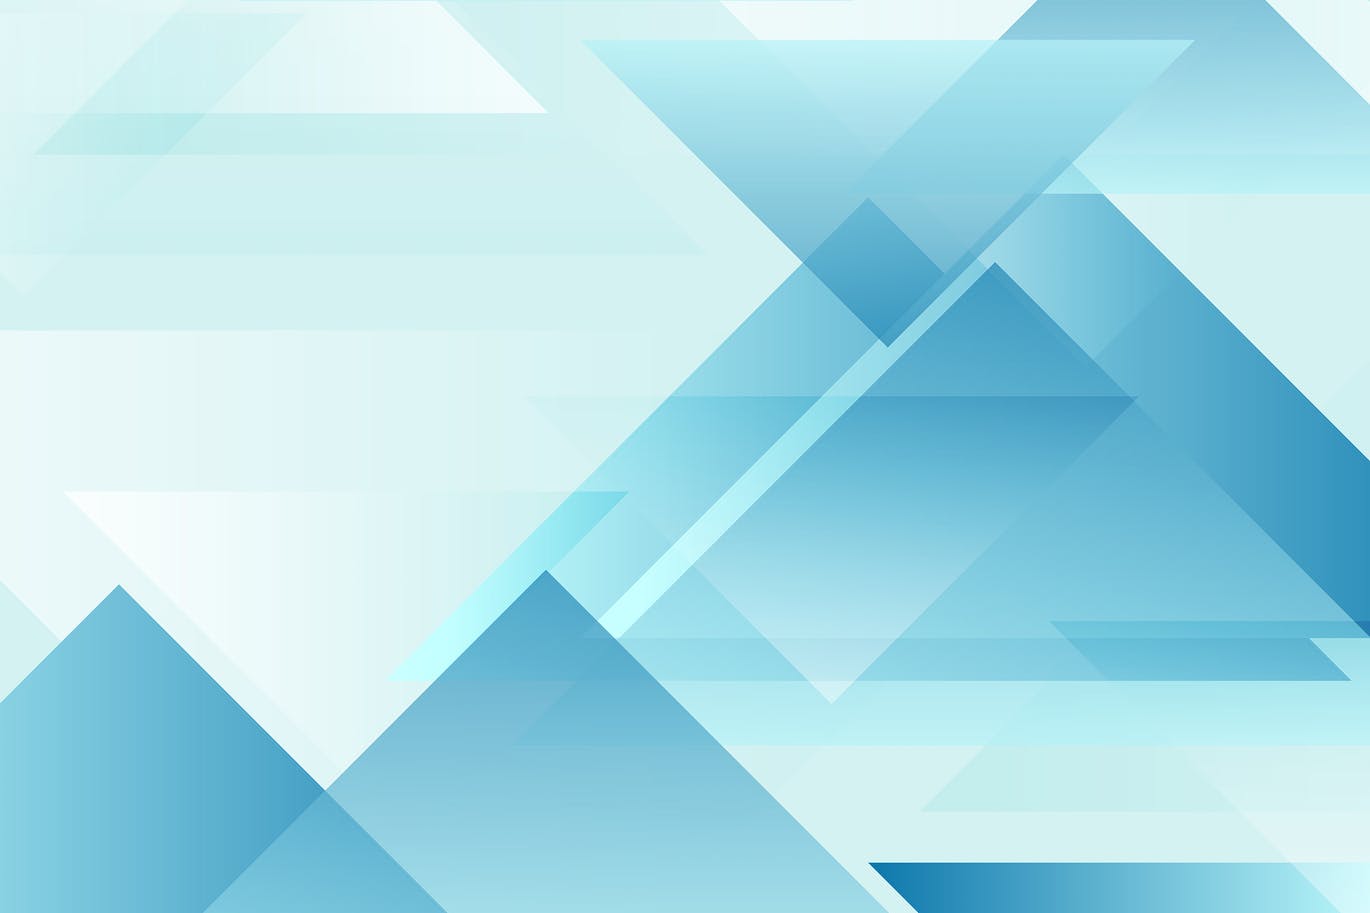 蓝色抽象几何三角形高清背景图素材 Abstract blue geometric triangles background插图